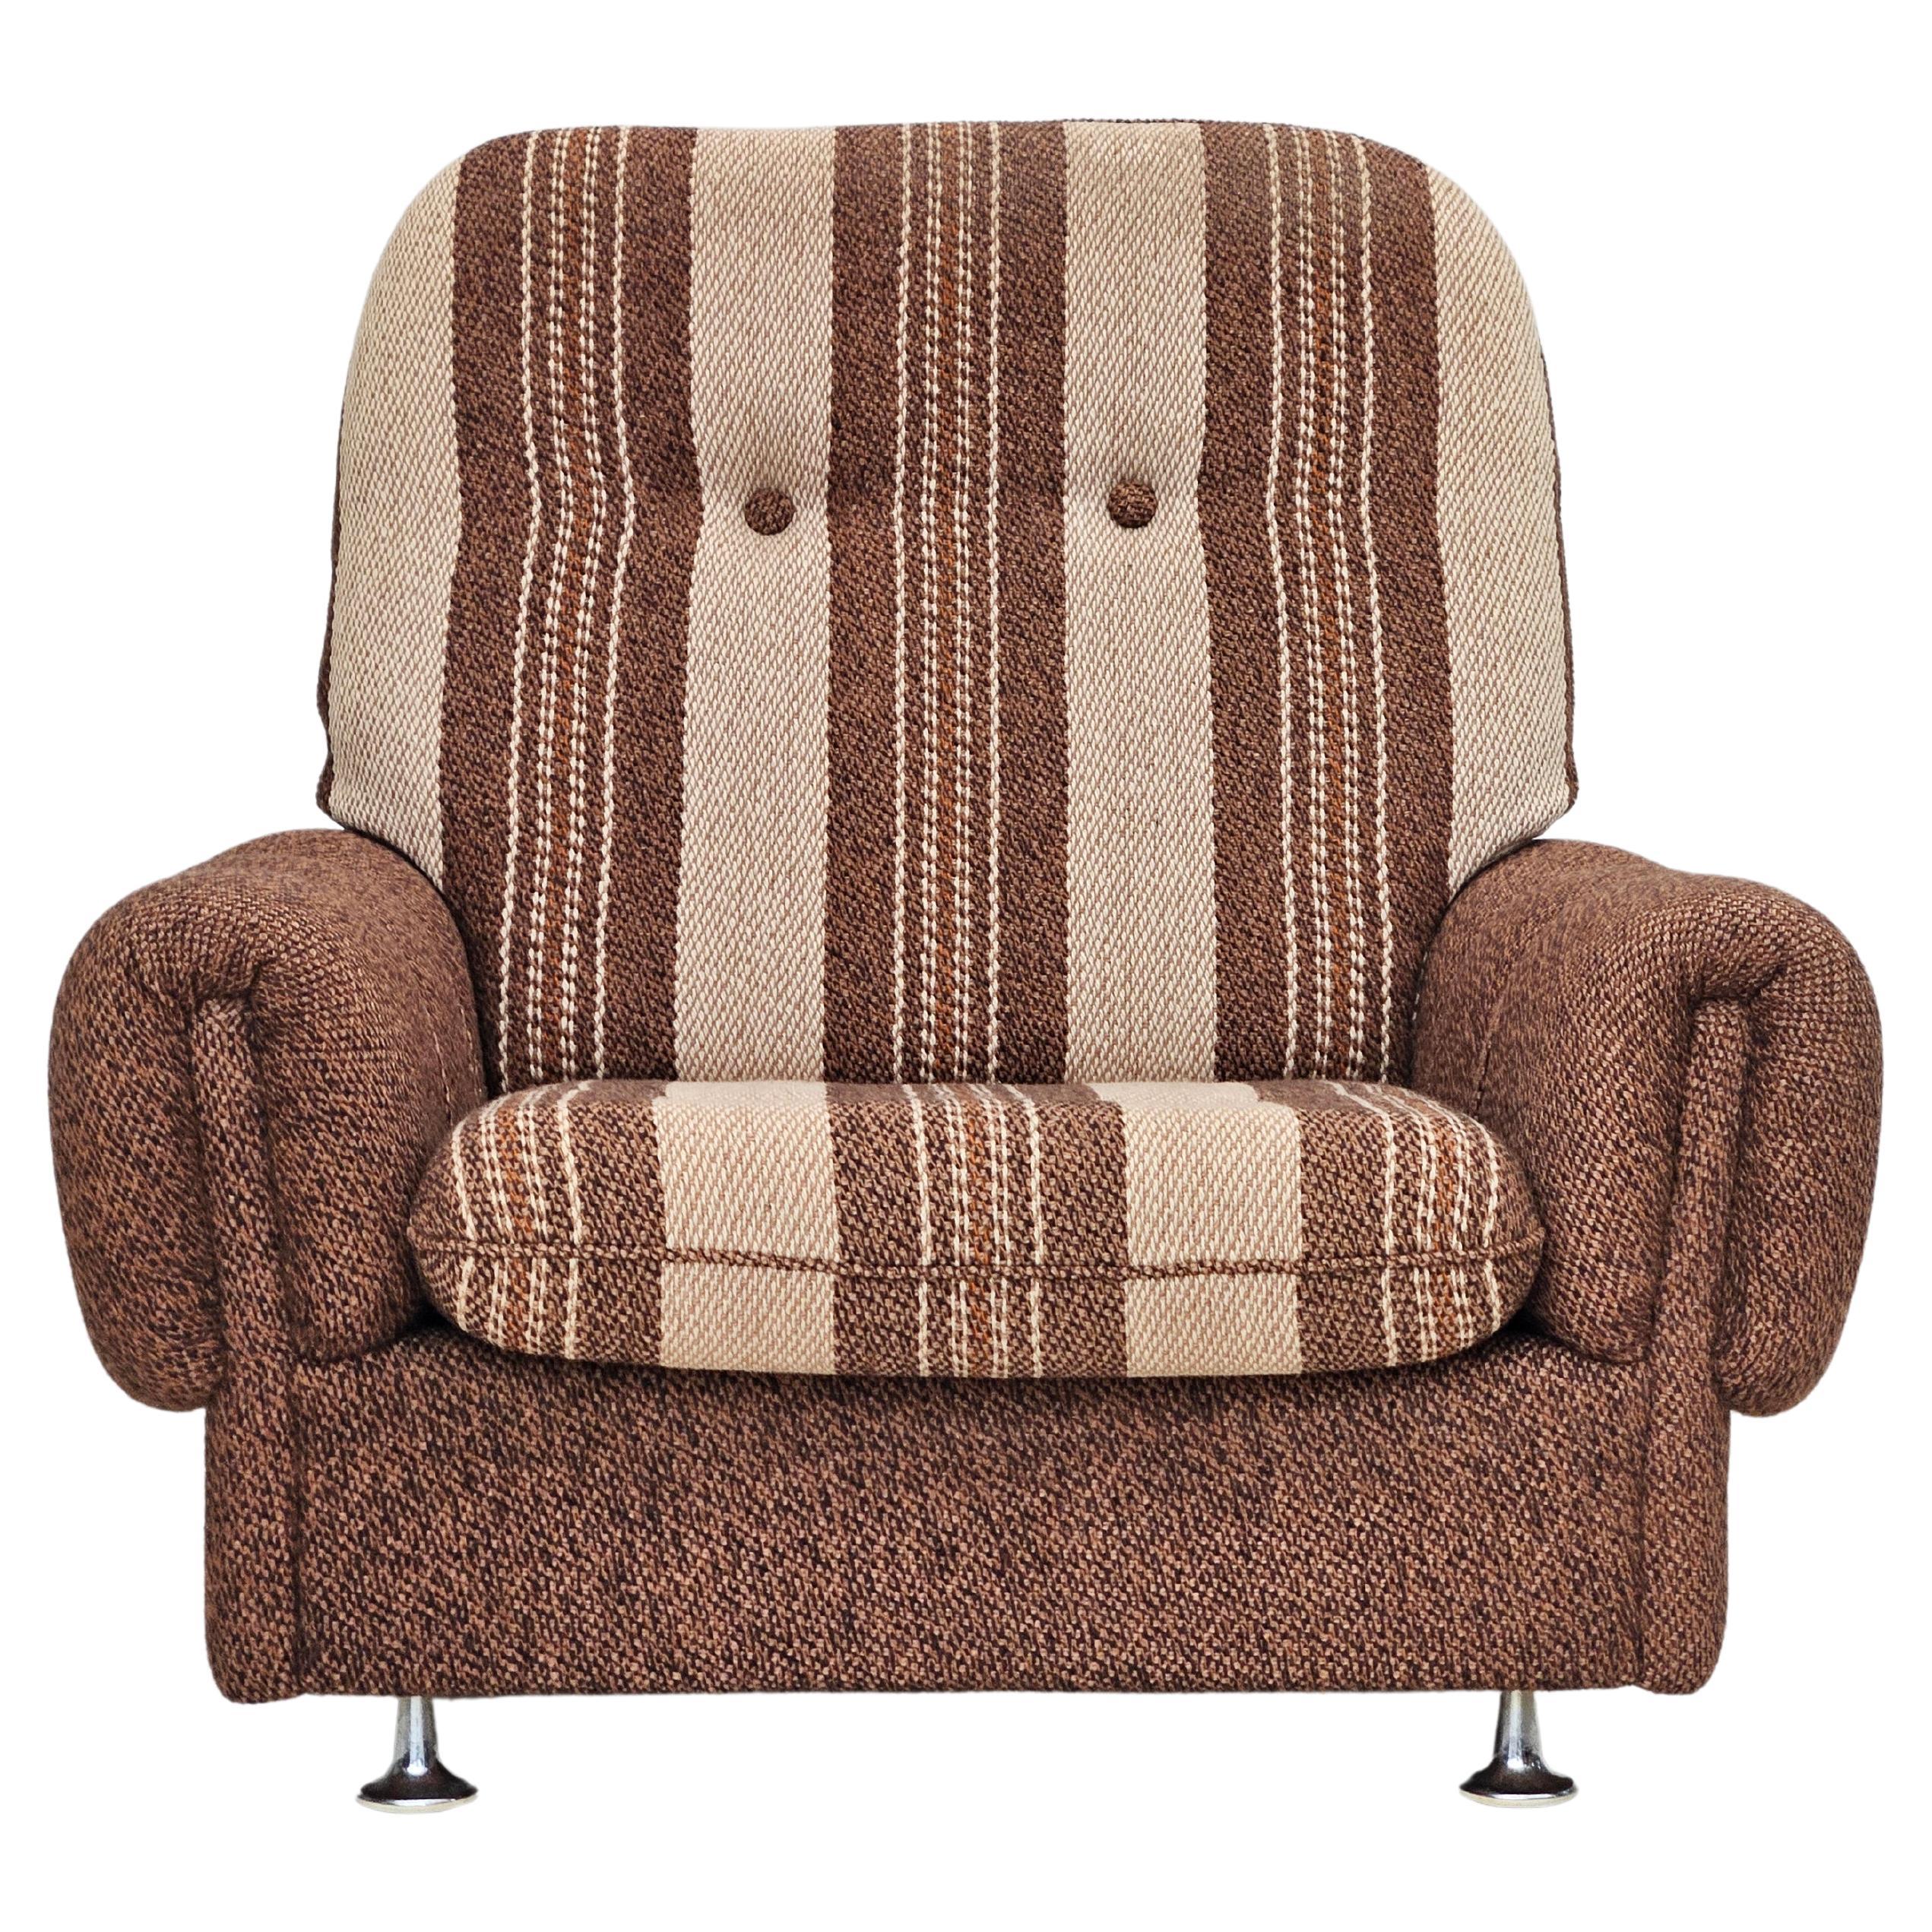 1970, chaise de détente danoise, tapisserie originale en laine, très bon état.